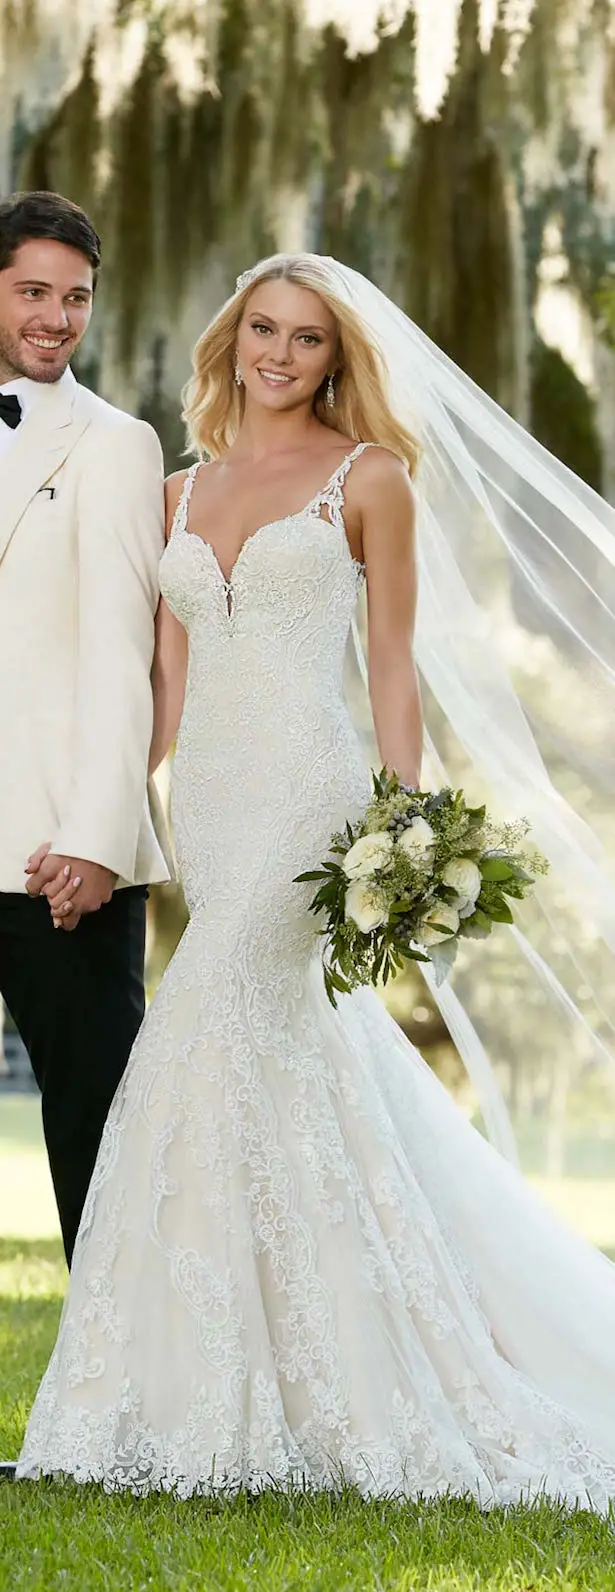 Martina Liana Spring 2016 Wedding Dress 